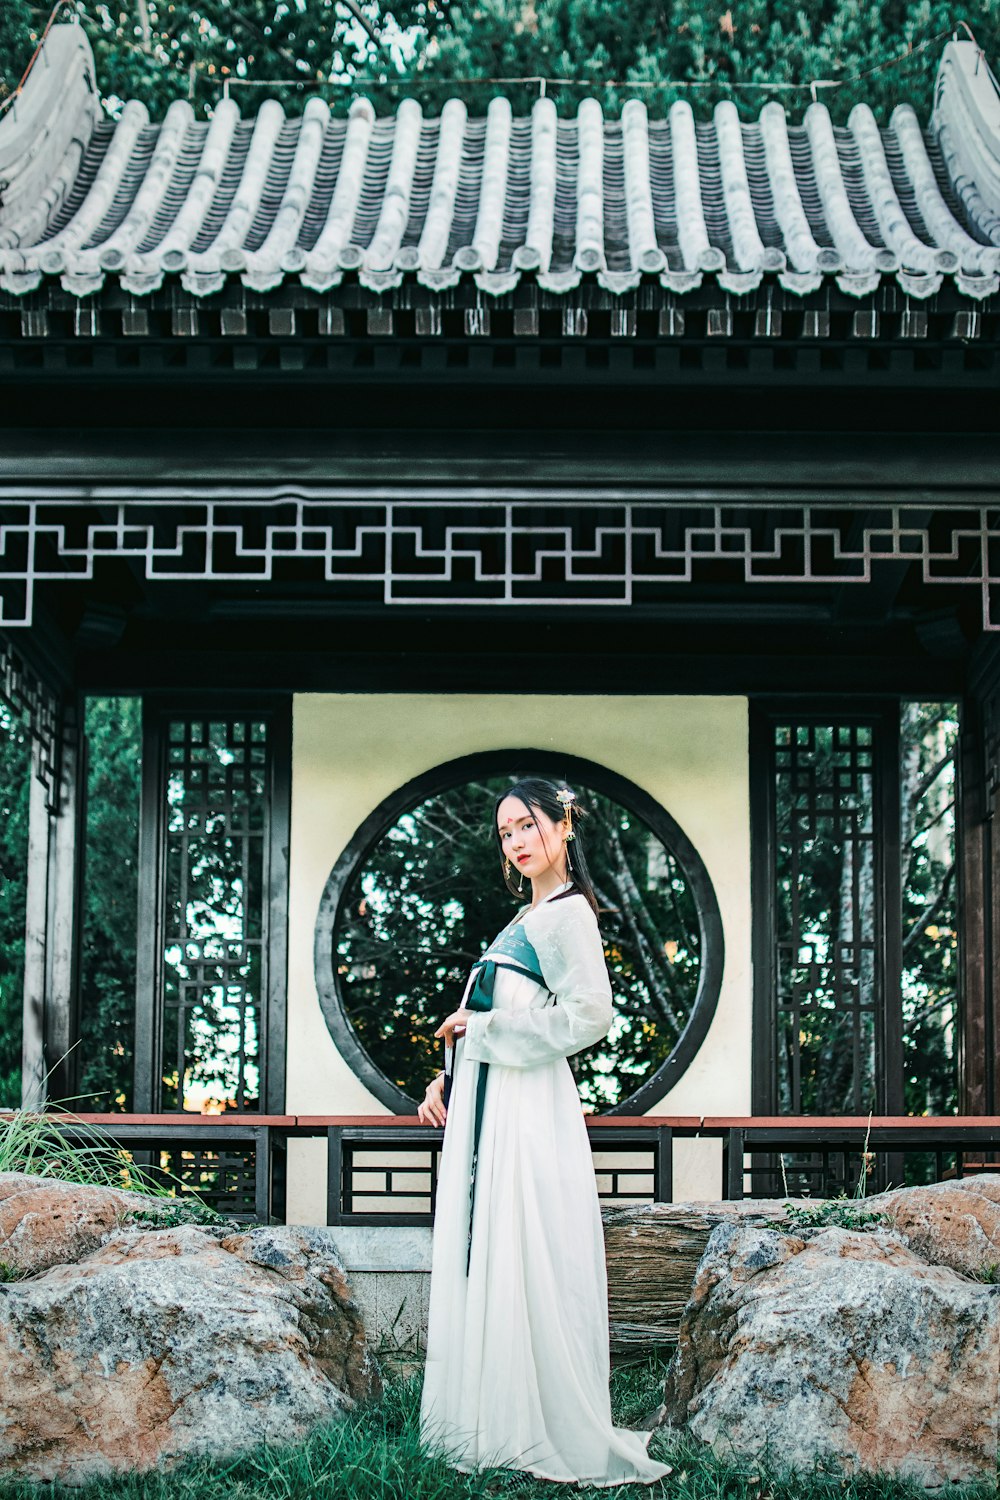 黒と白の寺院の前で白い袴を着た女性